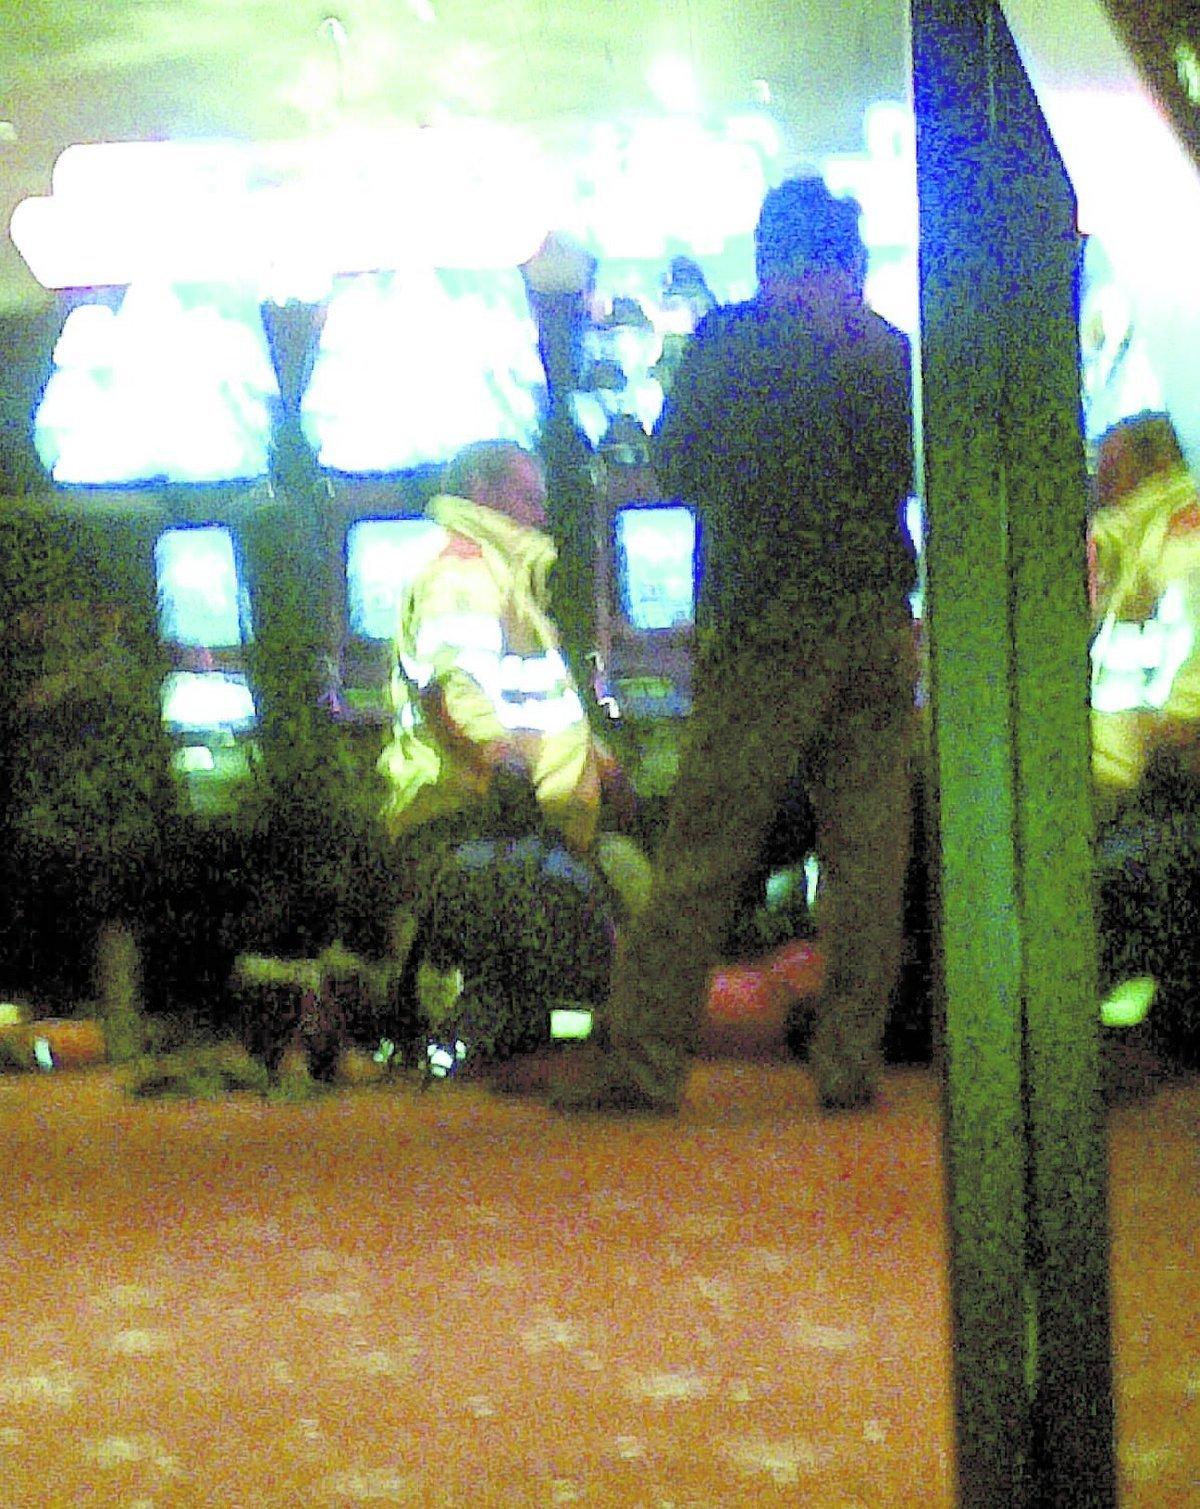 Första hjälpen En av de skottskadade gästerna får första hjälpen av ambulanspersonalen inne på kasinot framför några spelmaskiner.